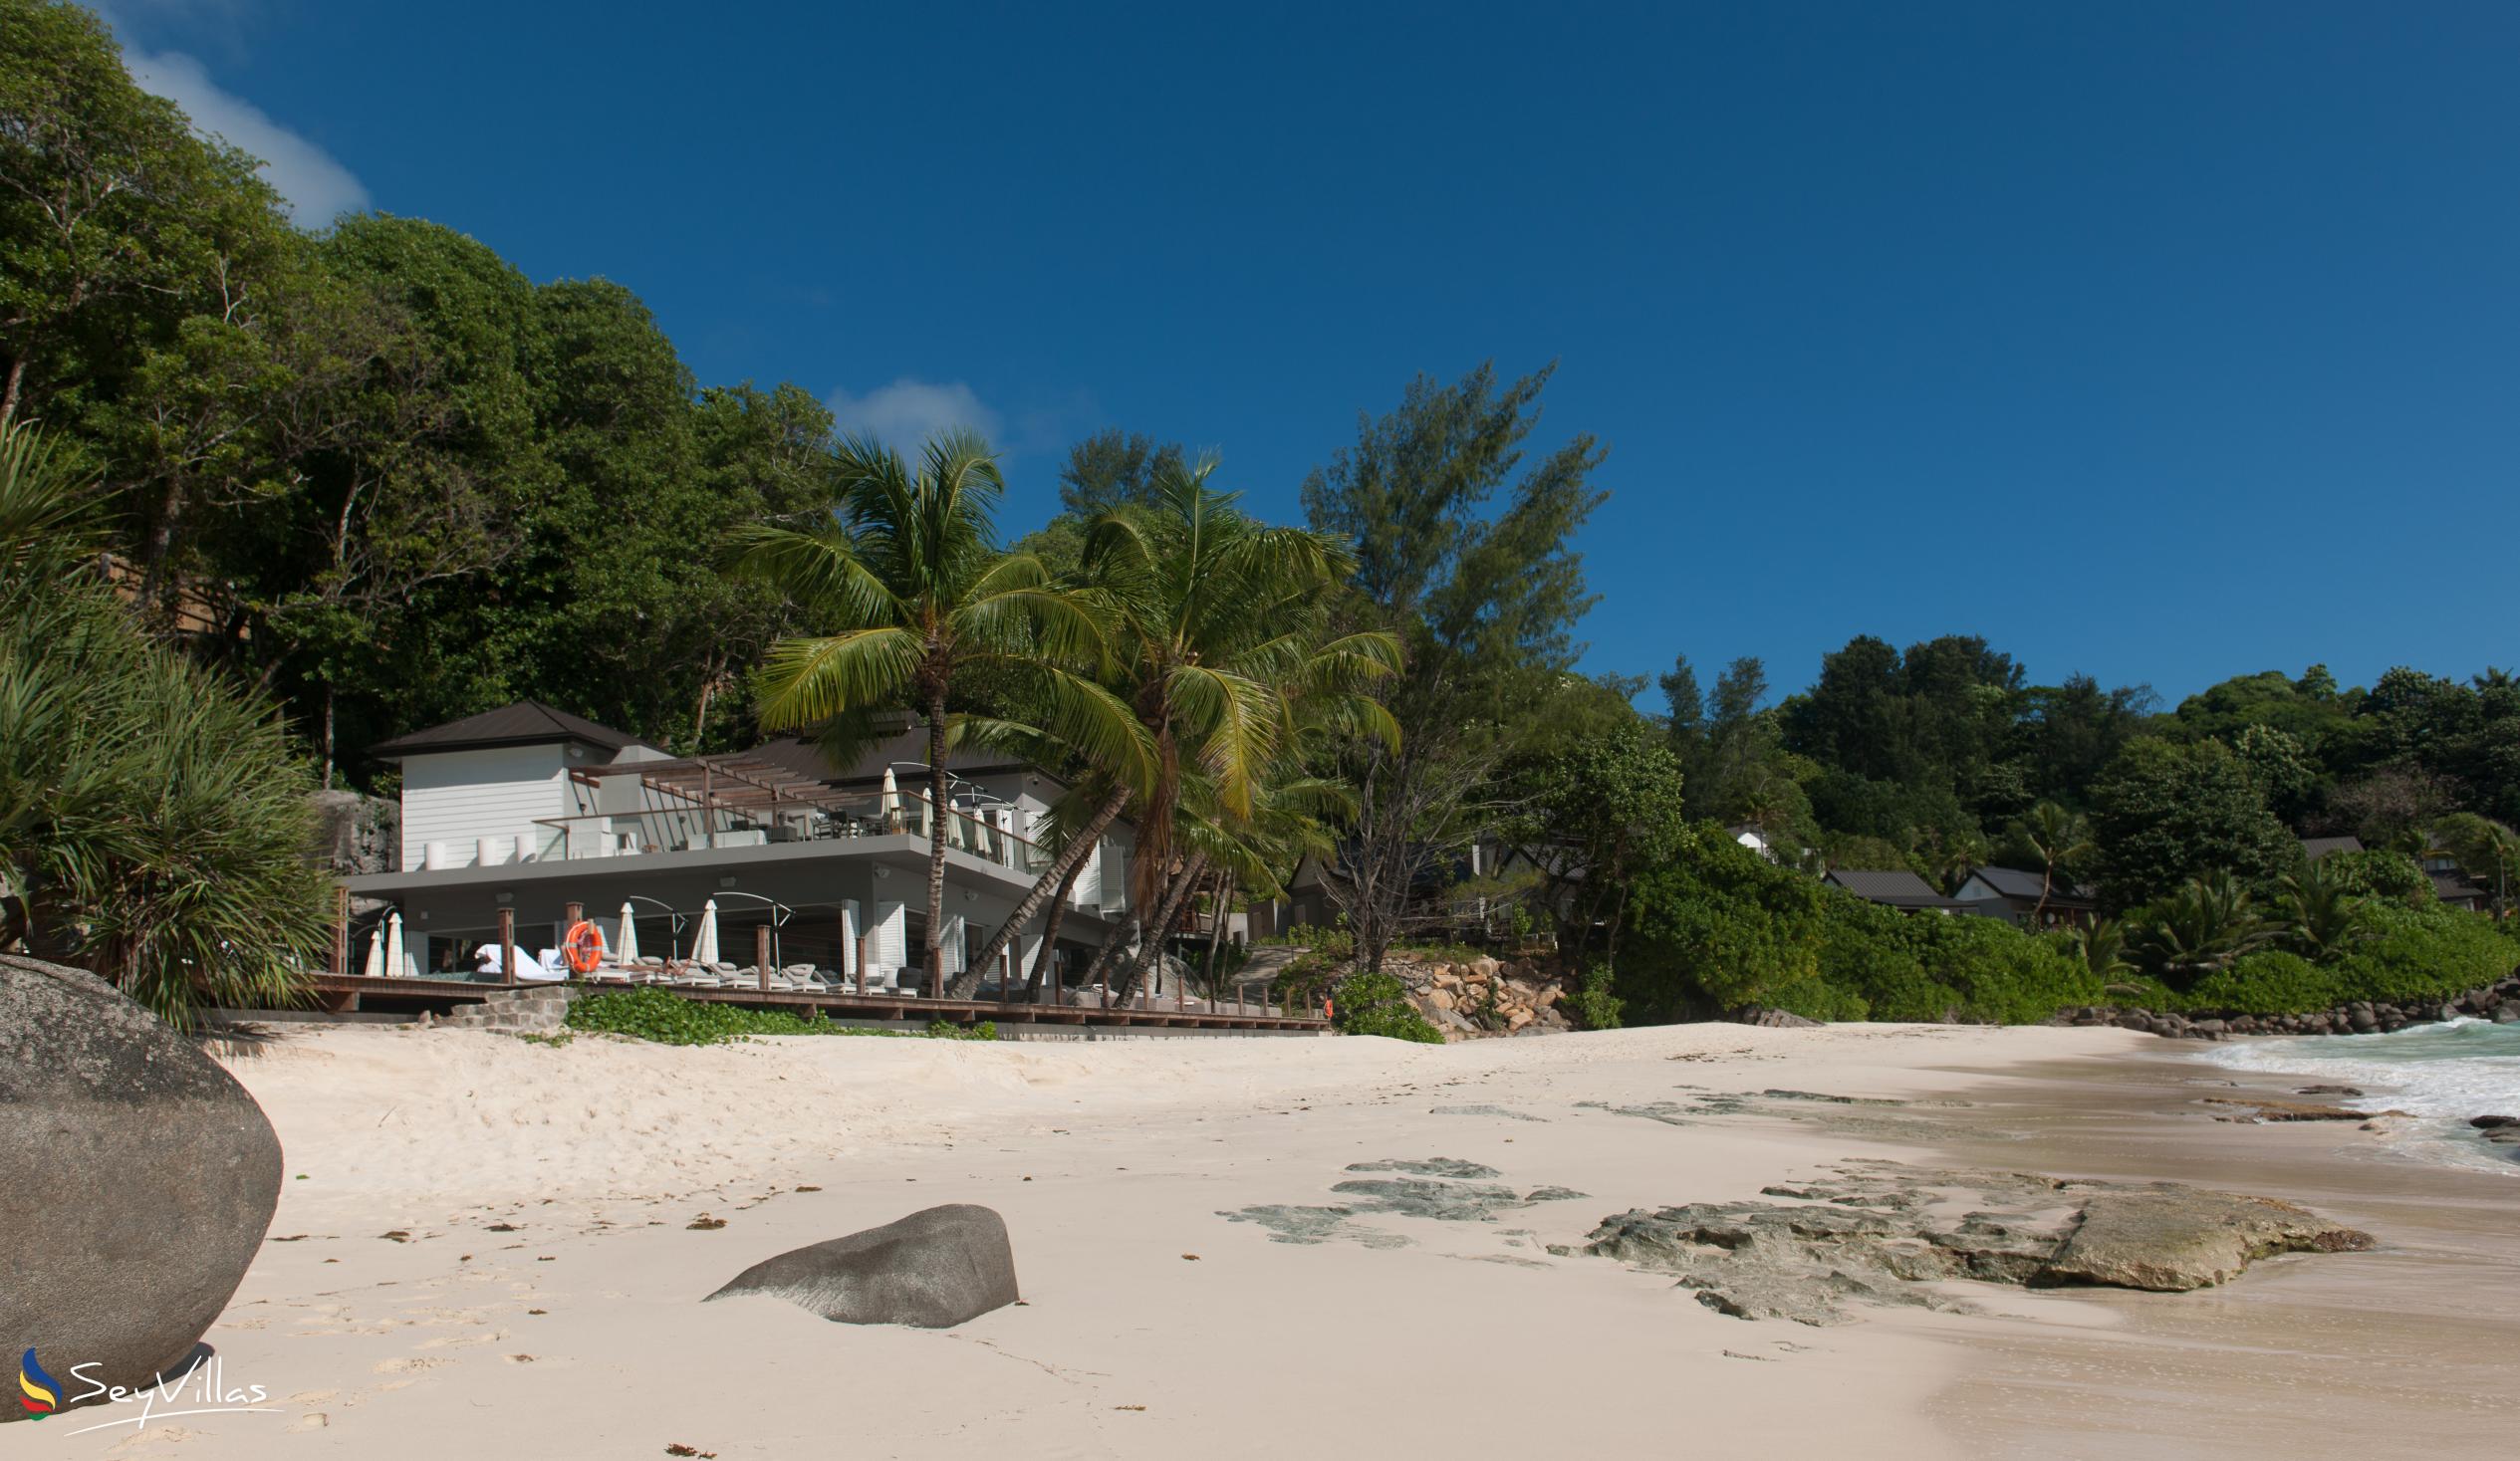 Foto 2: Carana Beach Hotel - Aussenbereich - Mahé (Seychellen)